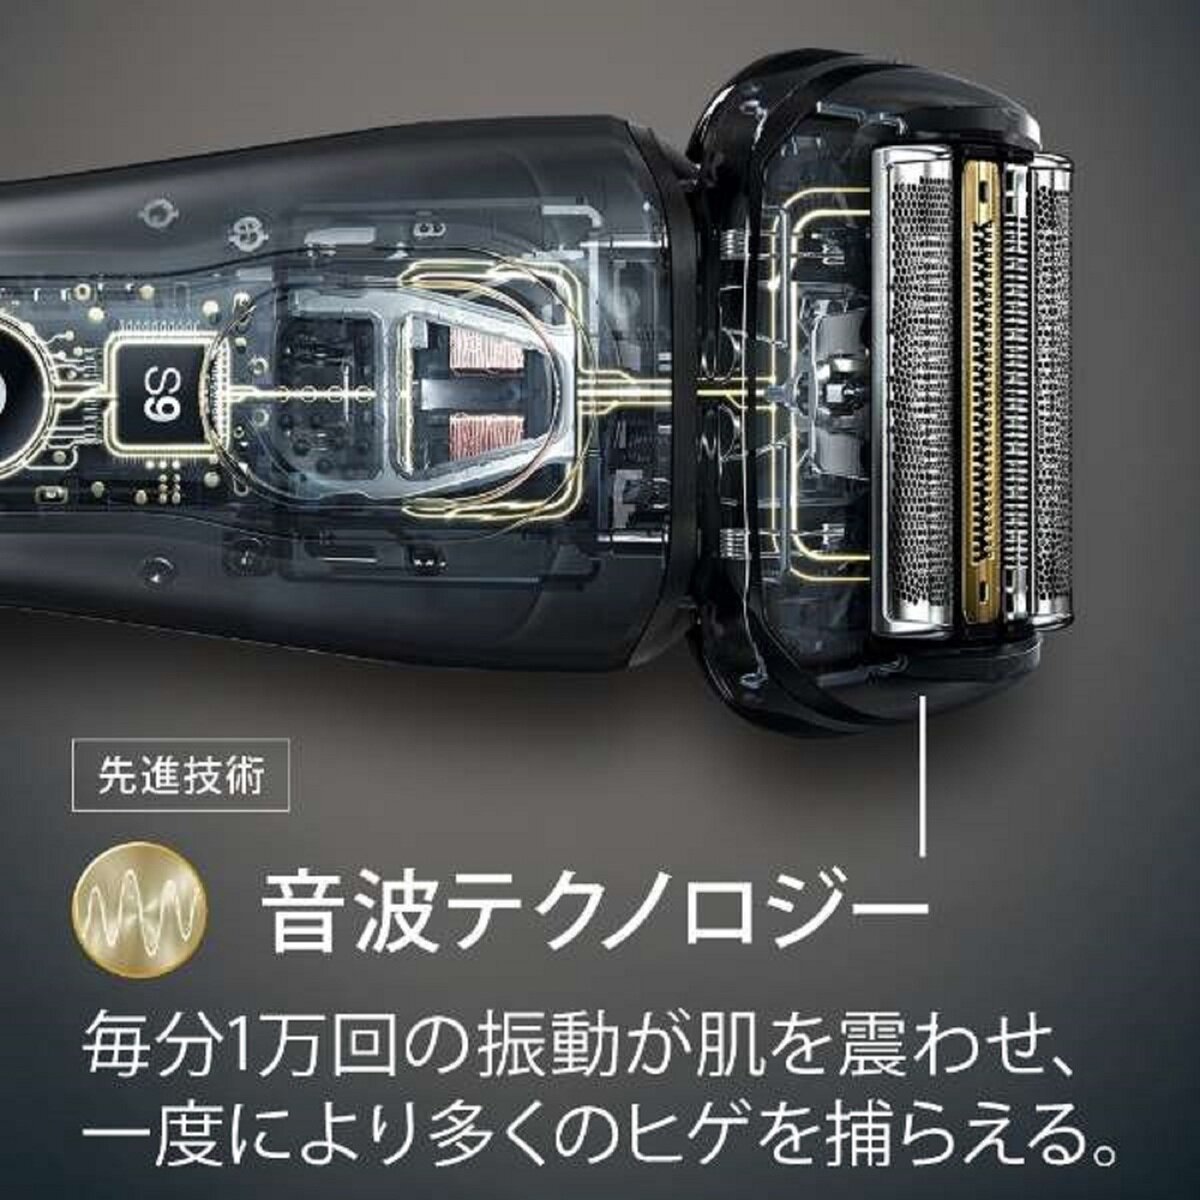 ブラウン 電気シェーバー Series 9 9296cc | Costco Japan